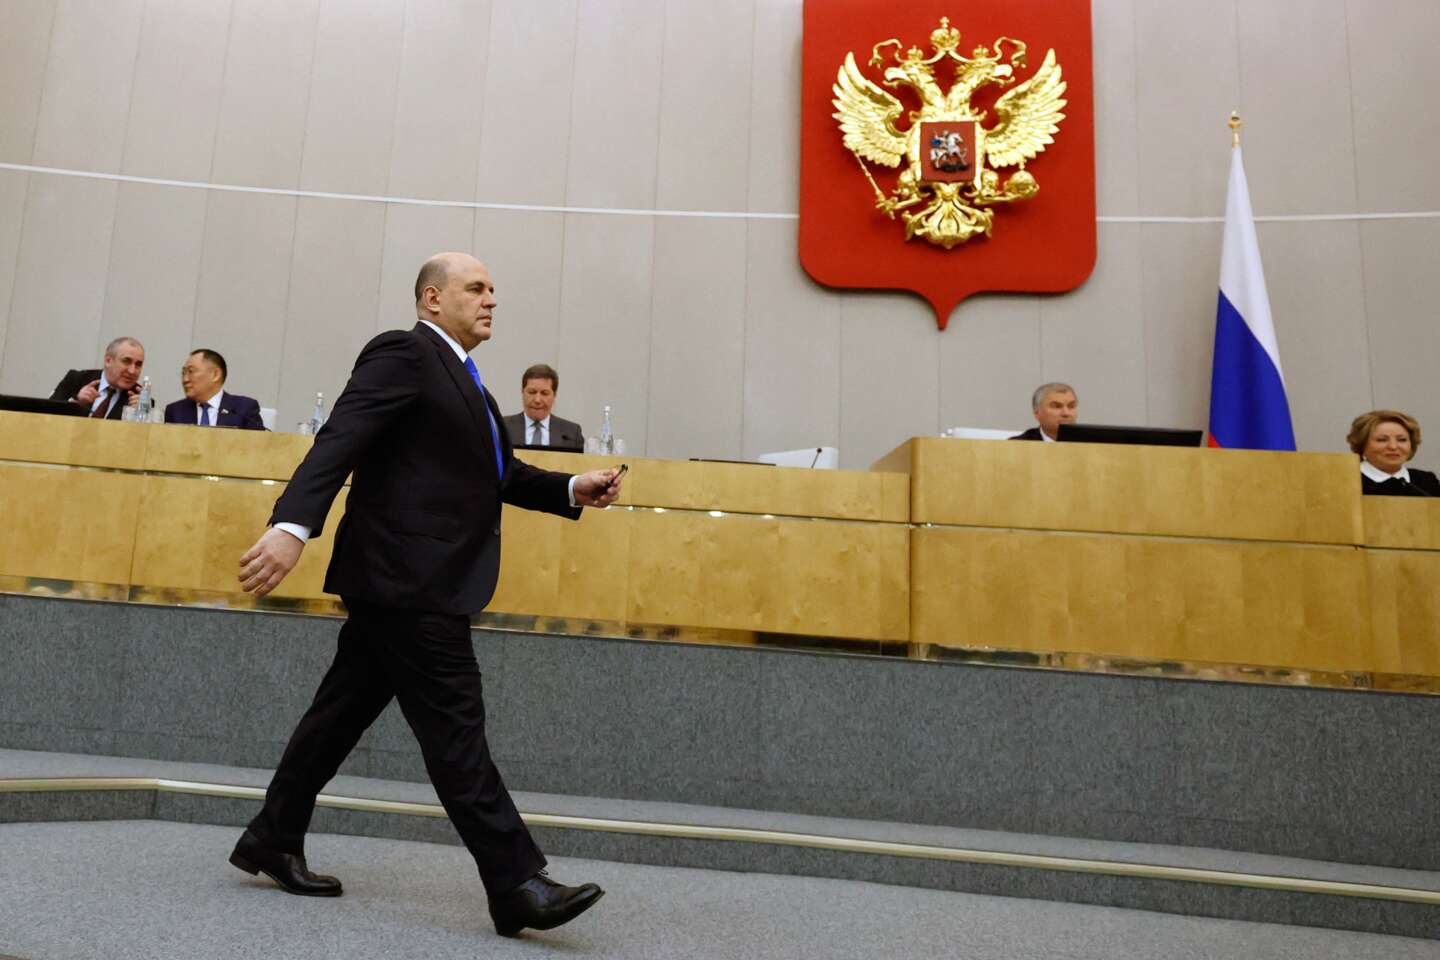 Rosja przeżywa szał legislacyjny w związku z konfliktem na Ukrainie